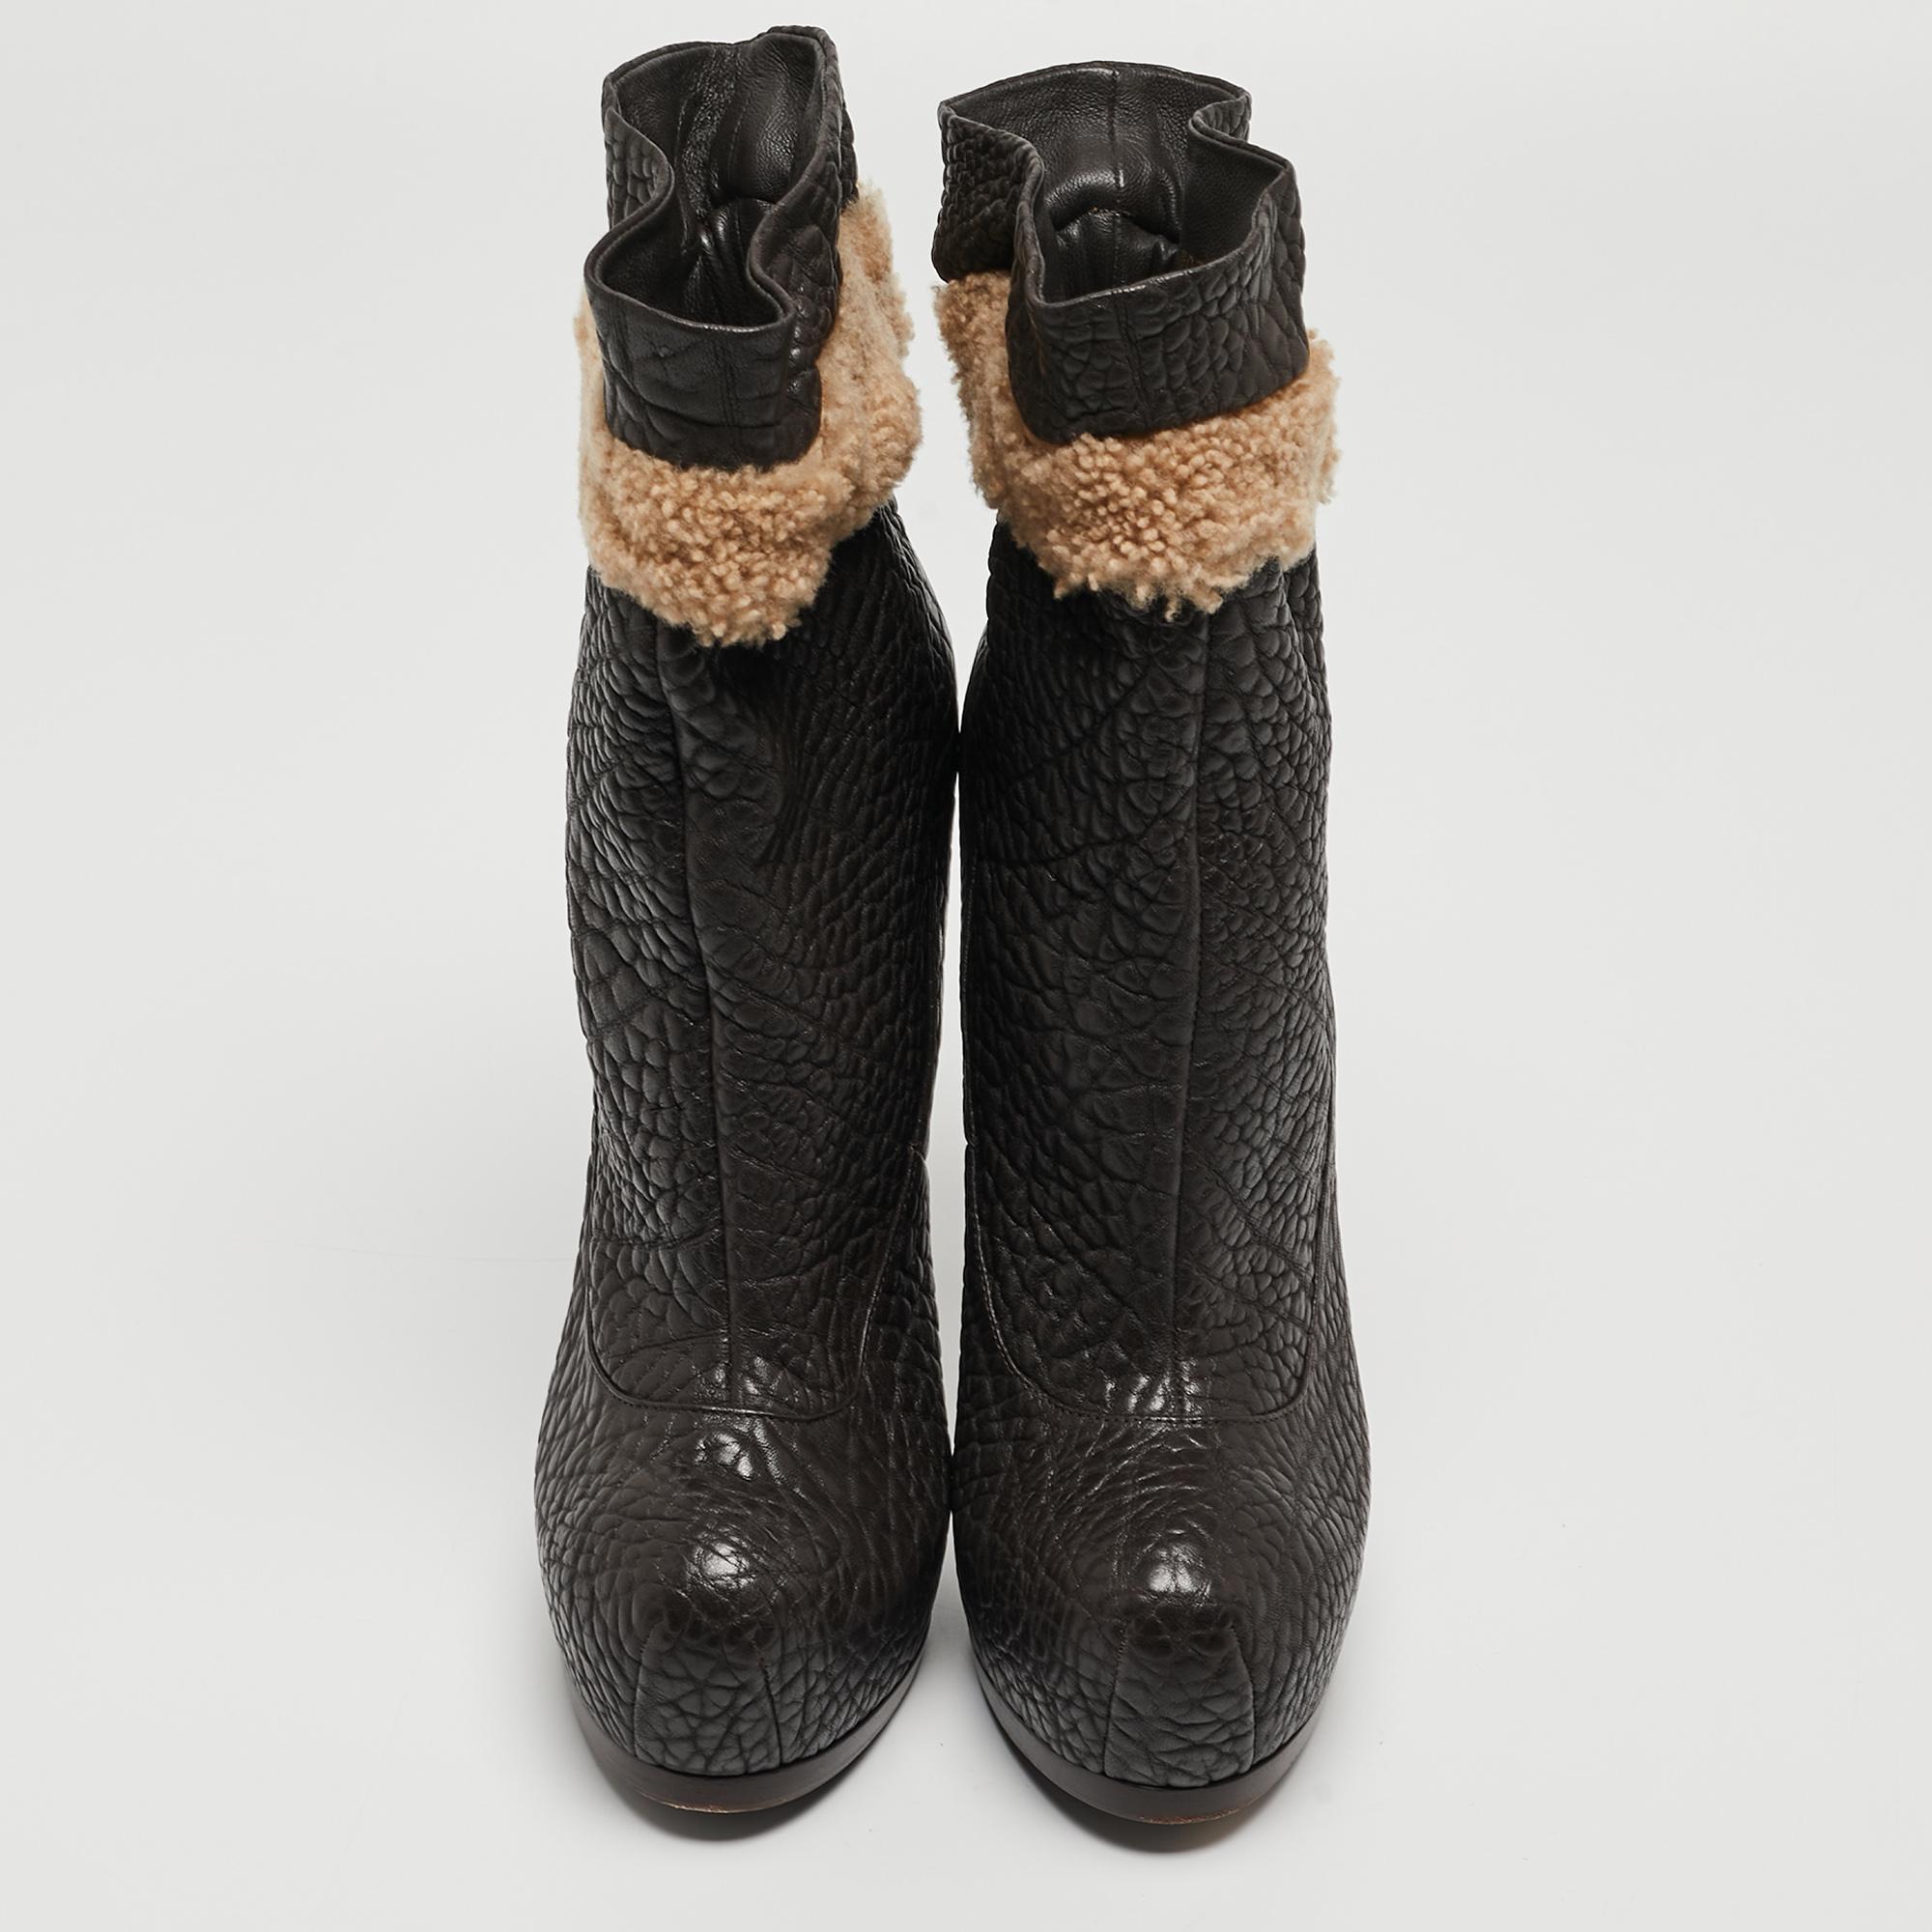 Adoptez un look sûr de vous avec ces bottines de créateur Yves Saint Laurent ! Elles sont réalisées en cuir texturé et agrémentées de bordures contrastantes en fourrure, de semelles compensées et de talons de 14 cm.

Comprend
Sac à poussière original